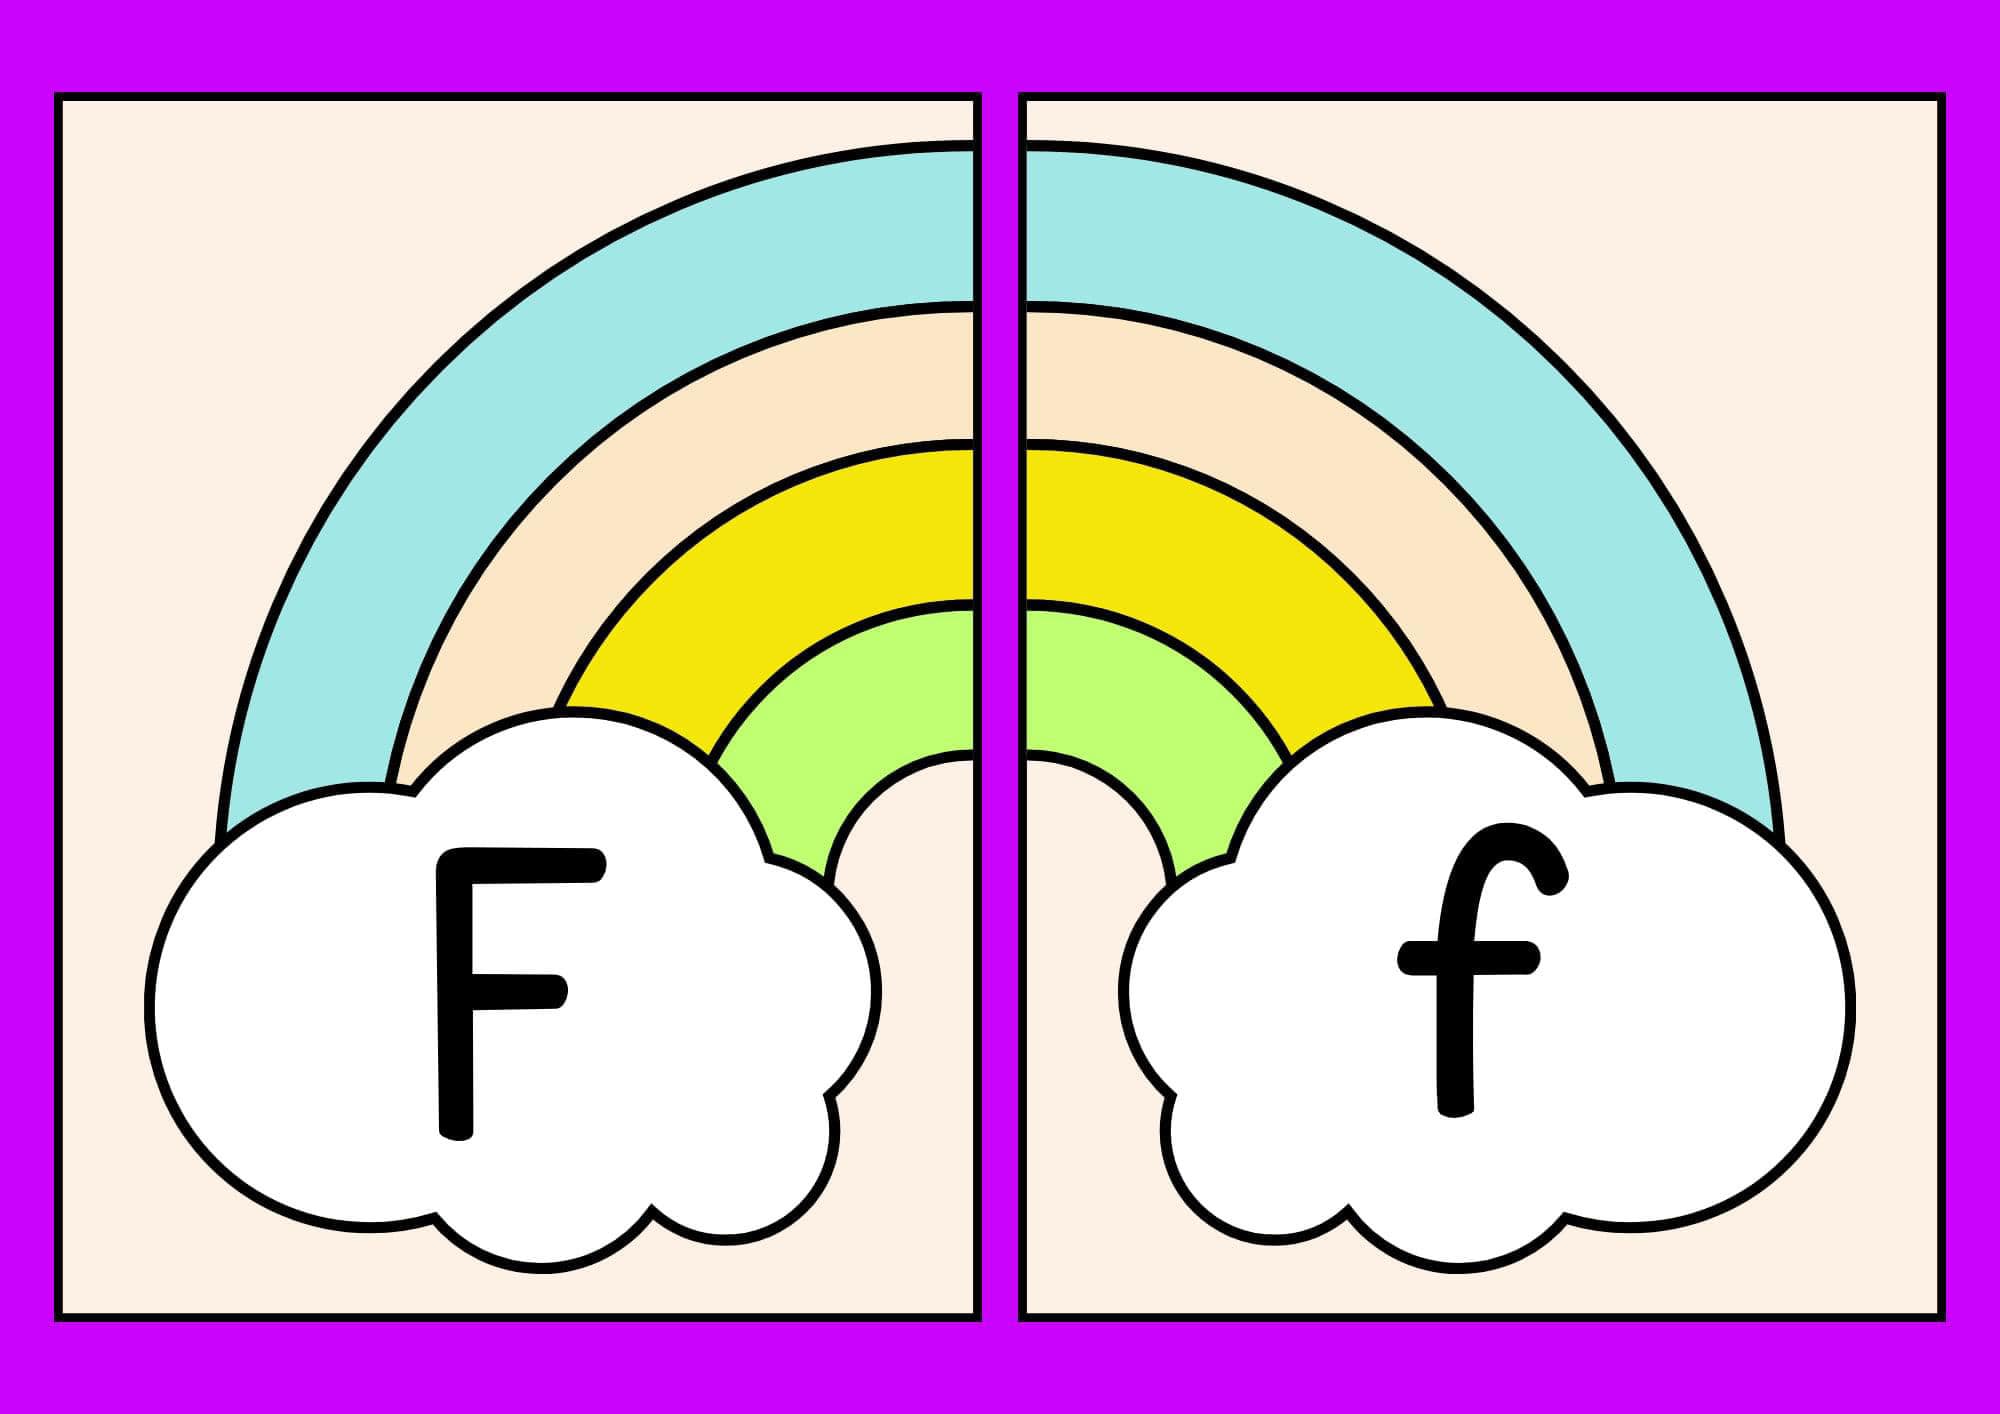 Alfabeto arco íris Ff